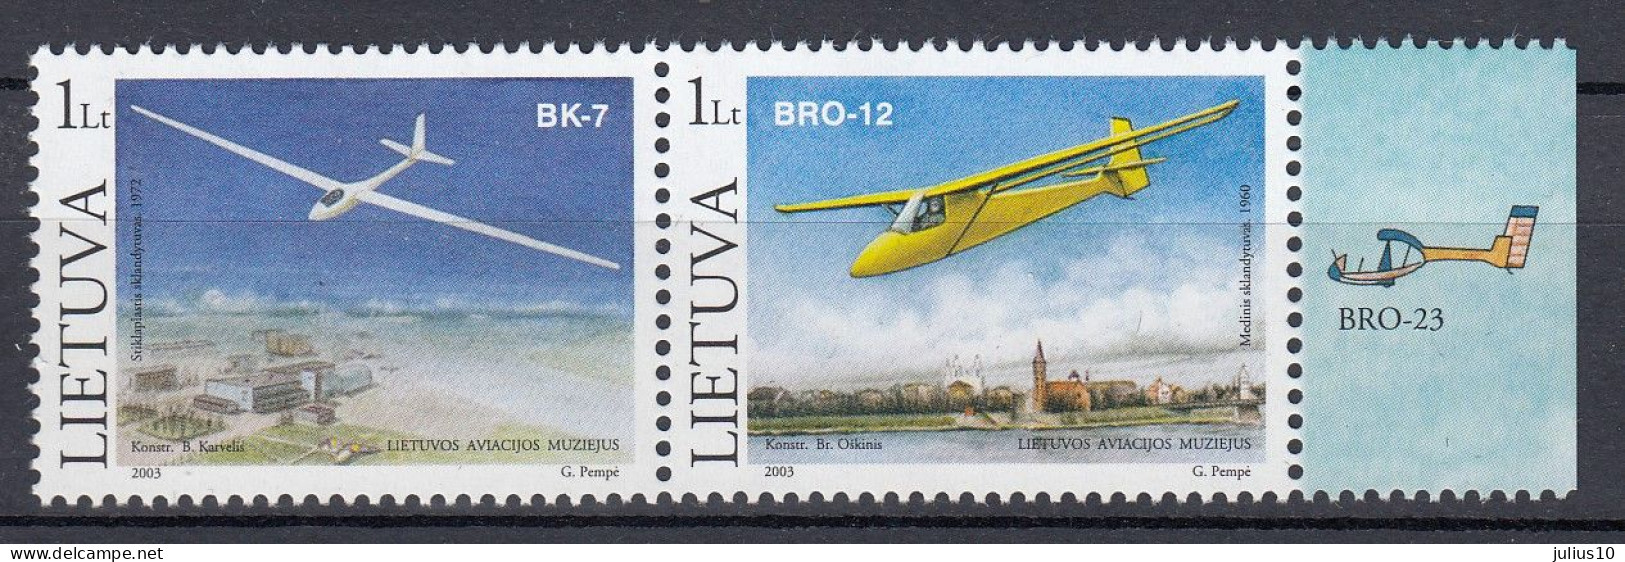 LITHUANIA 2003 Airplanes MNH(**) Mi 833-834 #Lt1011 - Lithuania